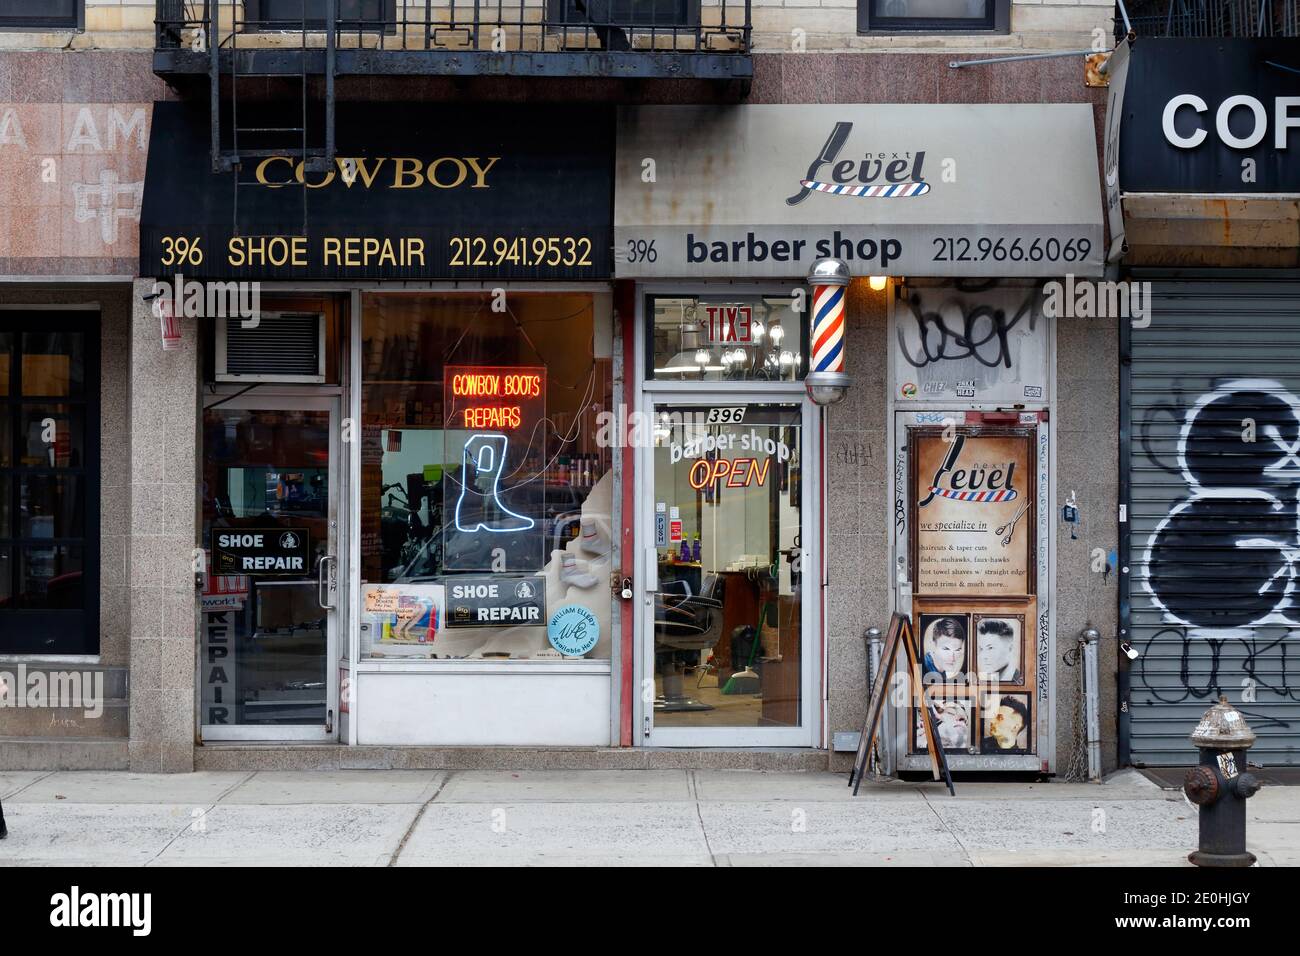 Cowboy Shoe Repair, Next Level Barber Shop, 396 Broome St, New York, NY. Façade extérieure d'un atelier de réparation de chaussures et d'un barbershop à SoHo. Banque D'Images